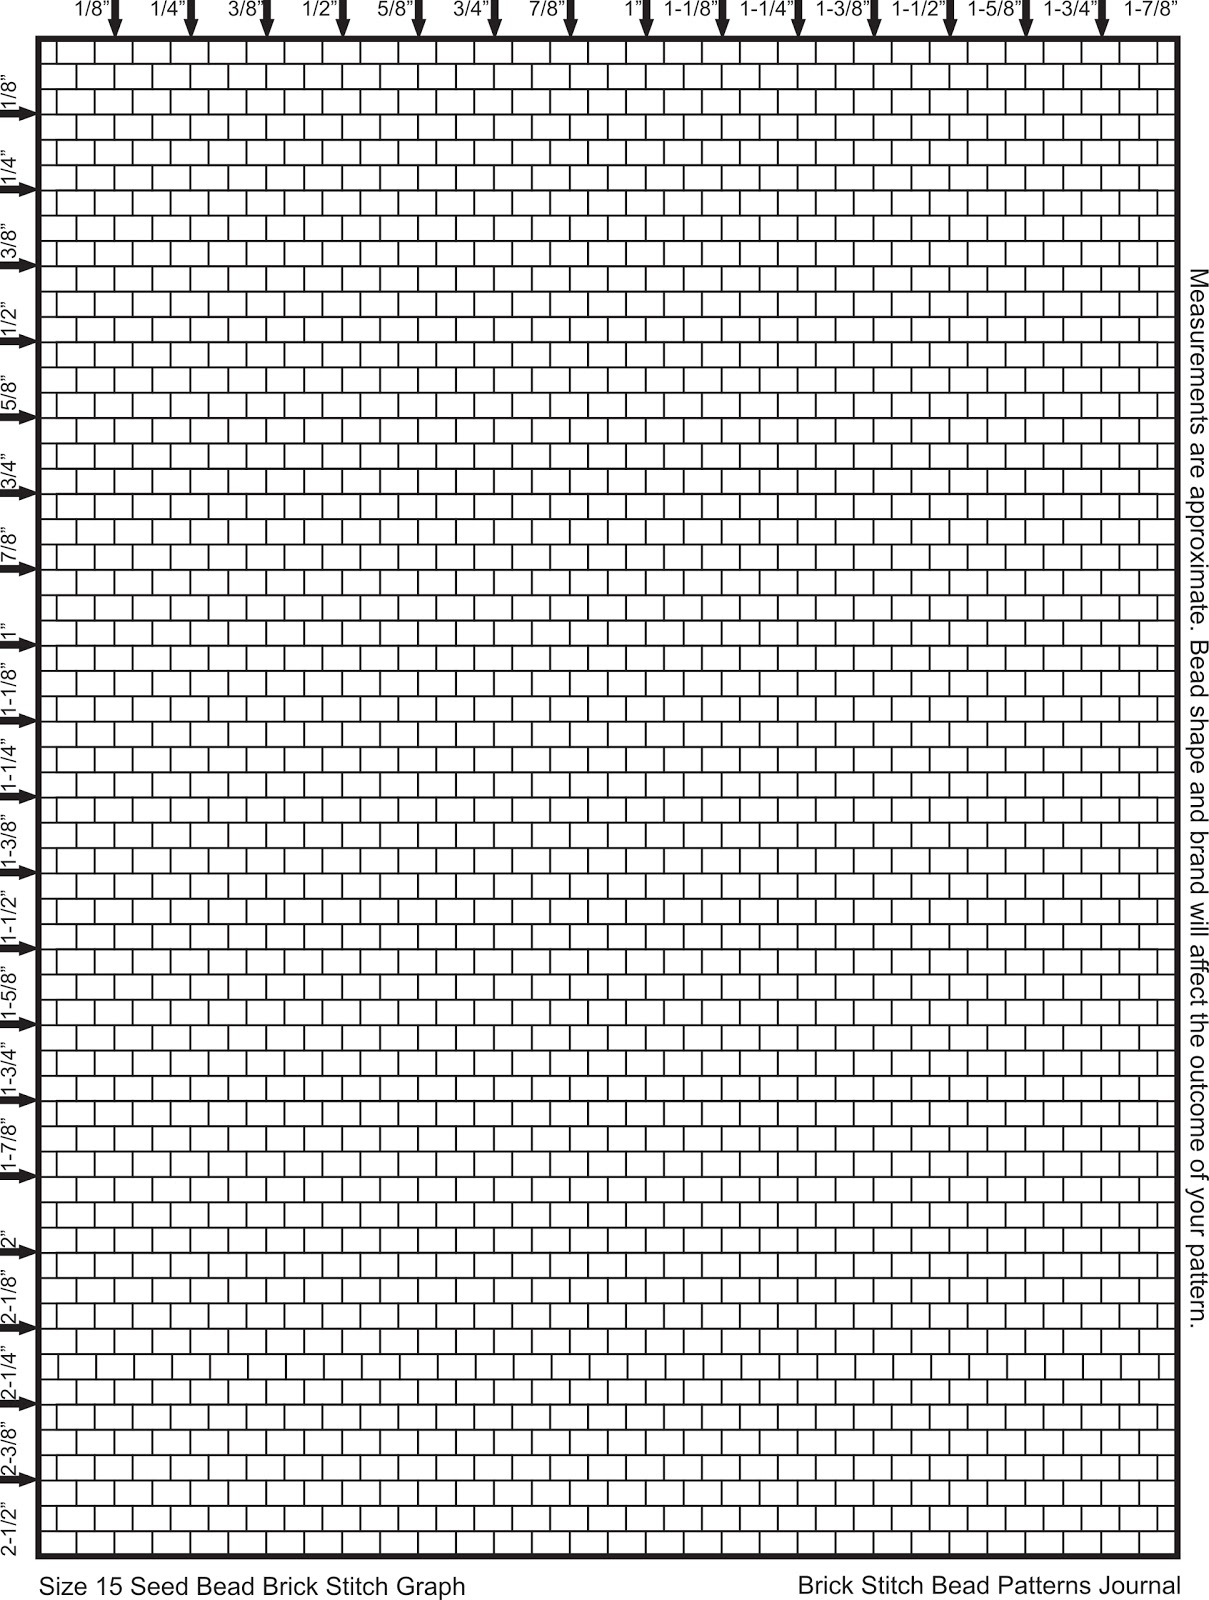 Brick Stitch Bead Patterns Journal Size 15 Seed Bead Brick Stitch 